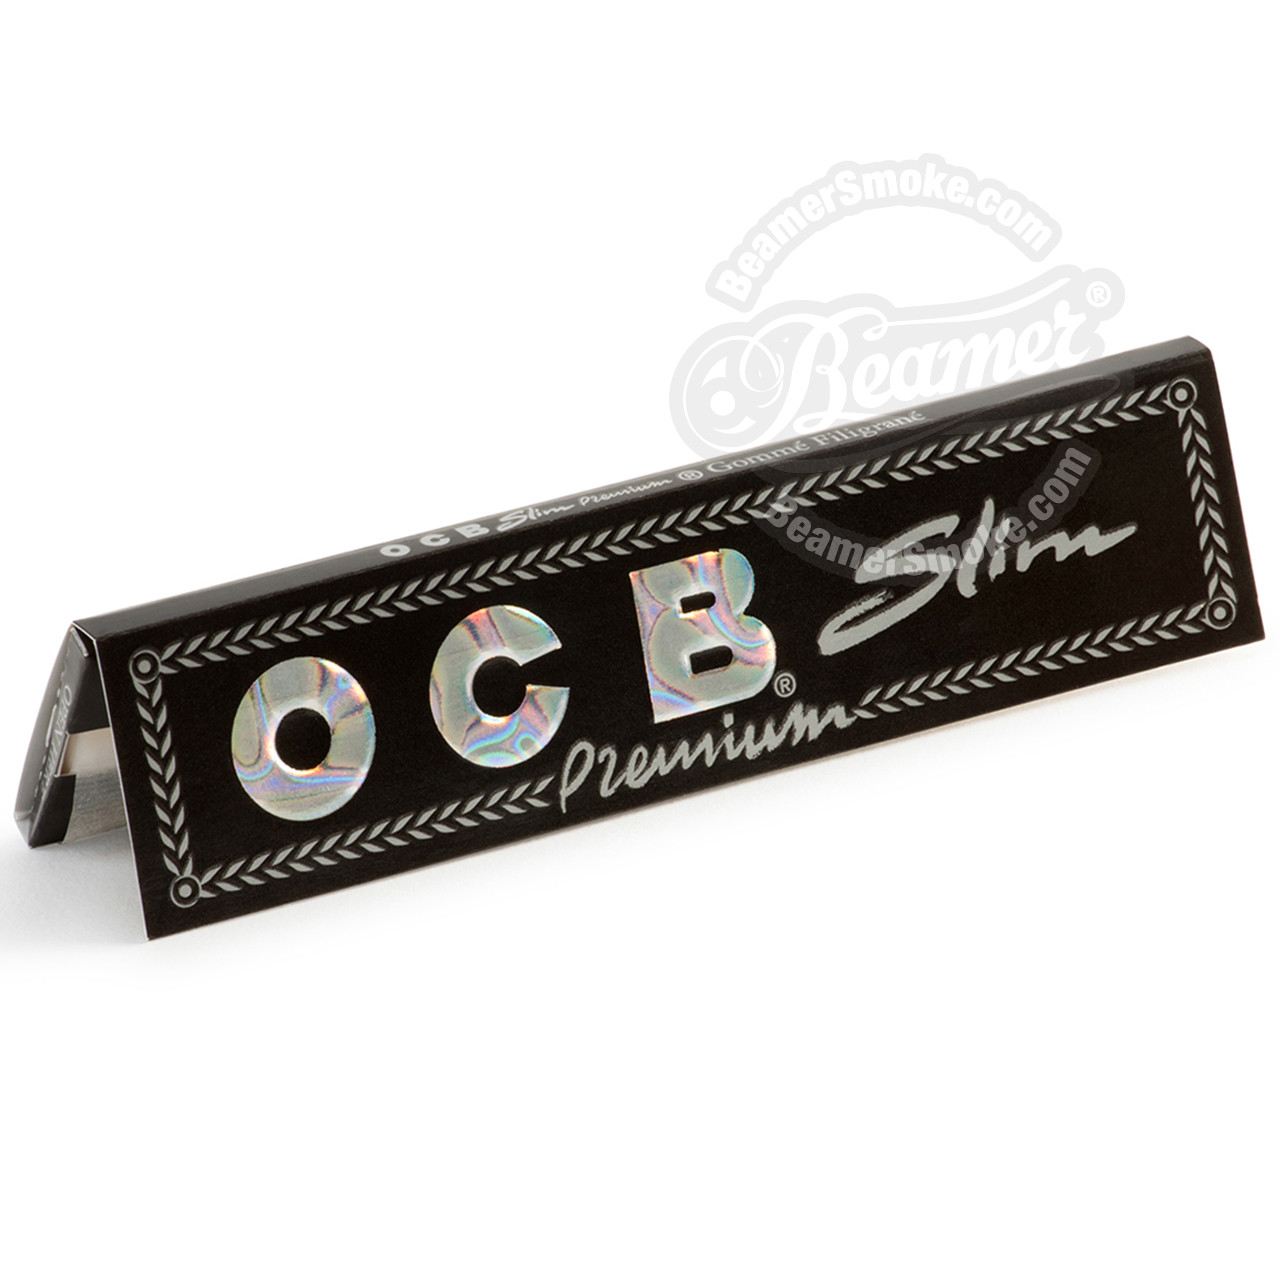 OCB Premium Slim King Size for sale